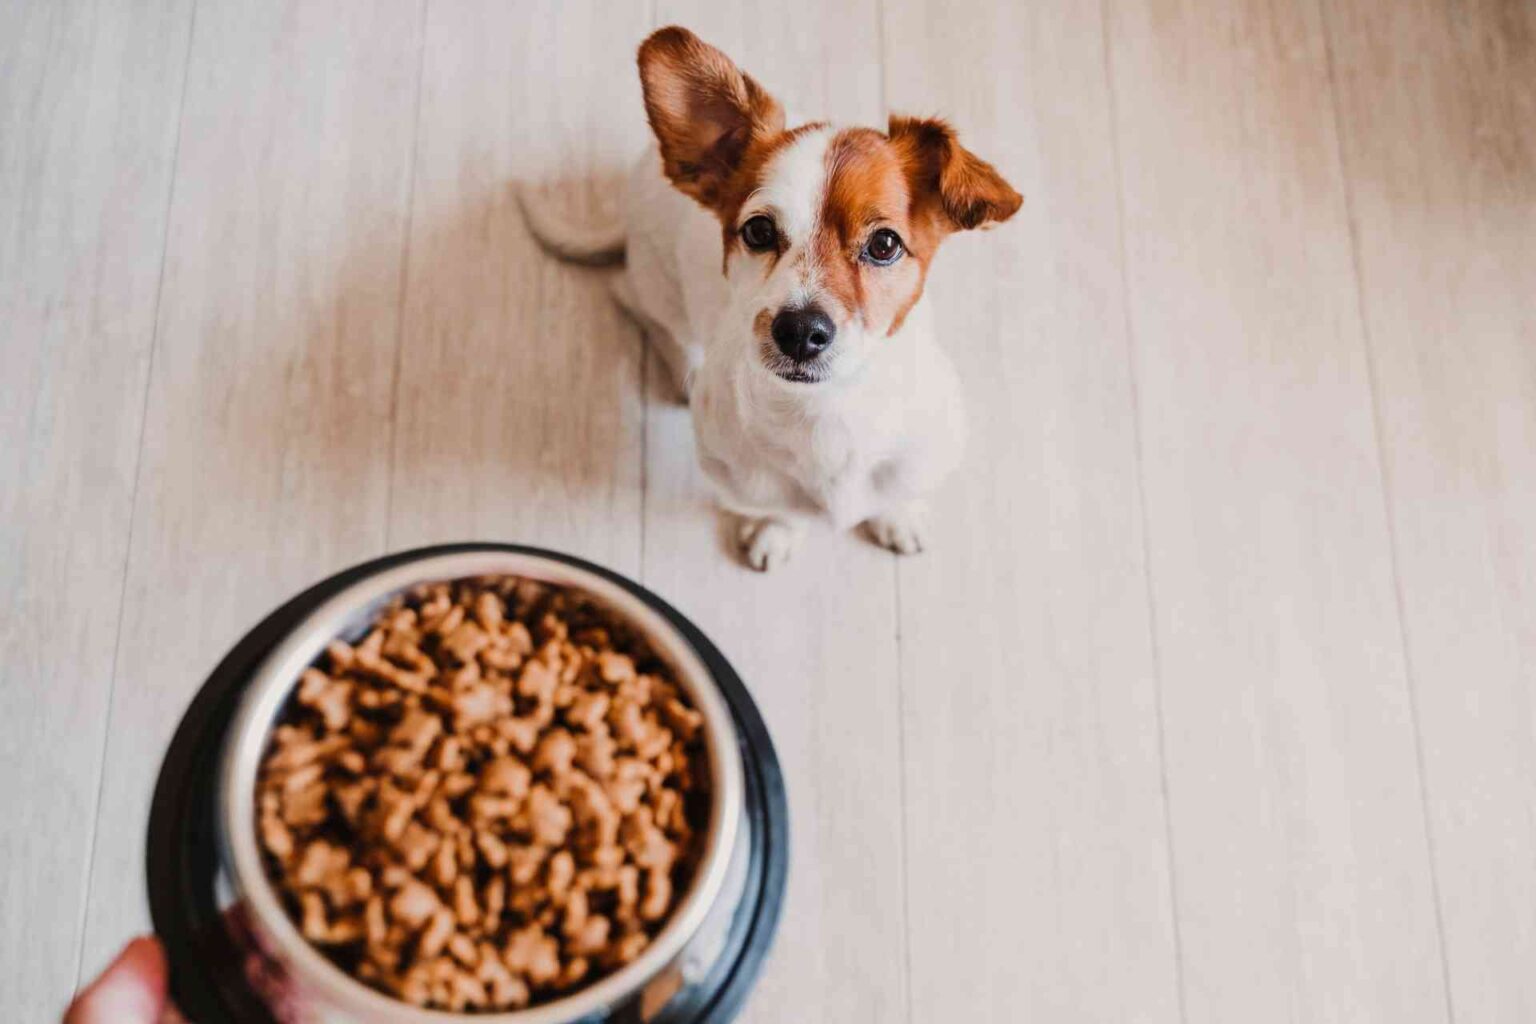 Malattia renale cronica e alimentazione in cani e gatti